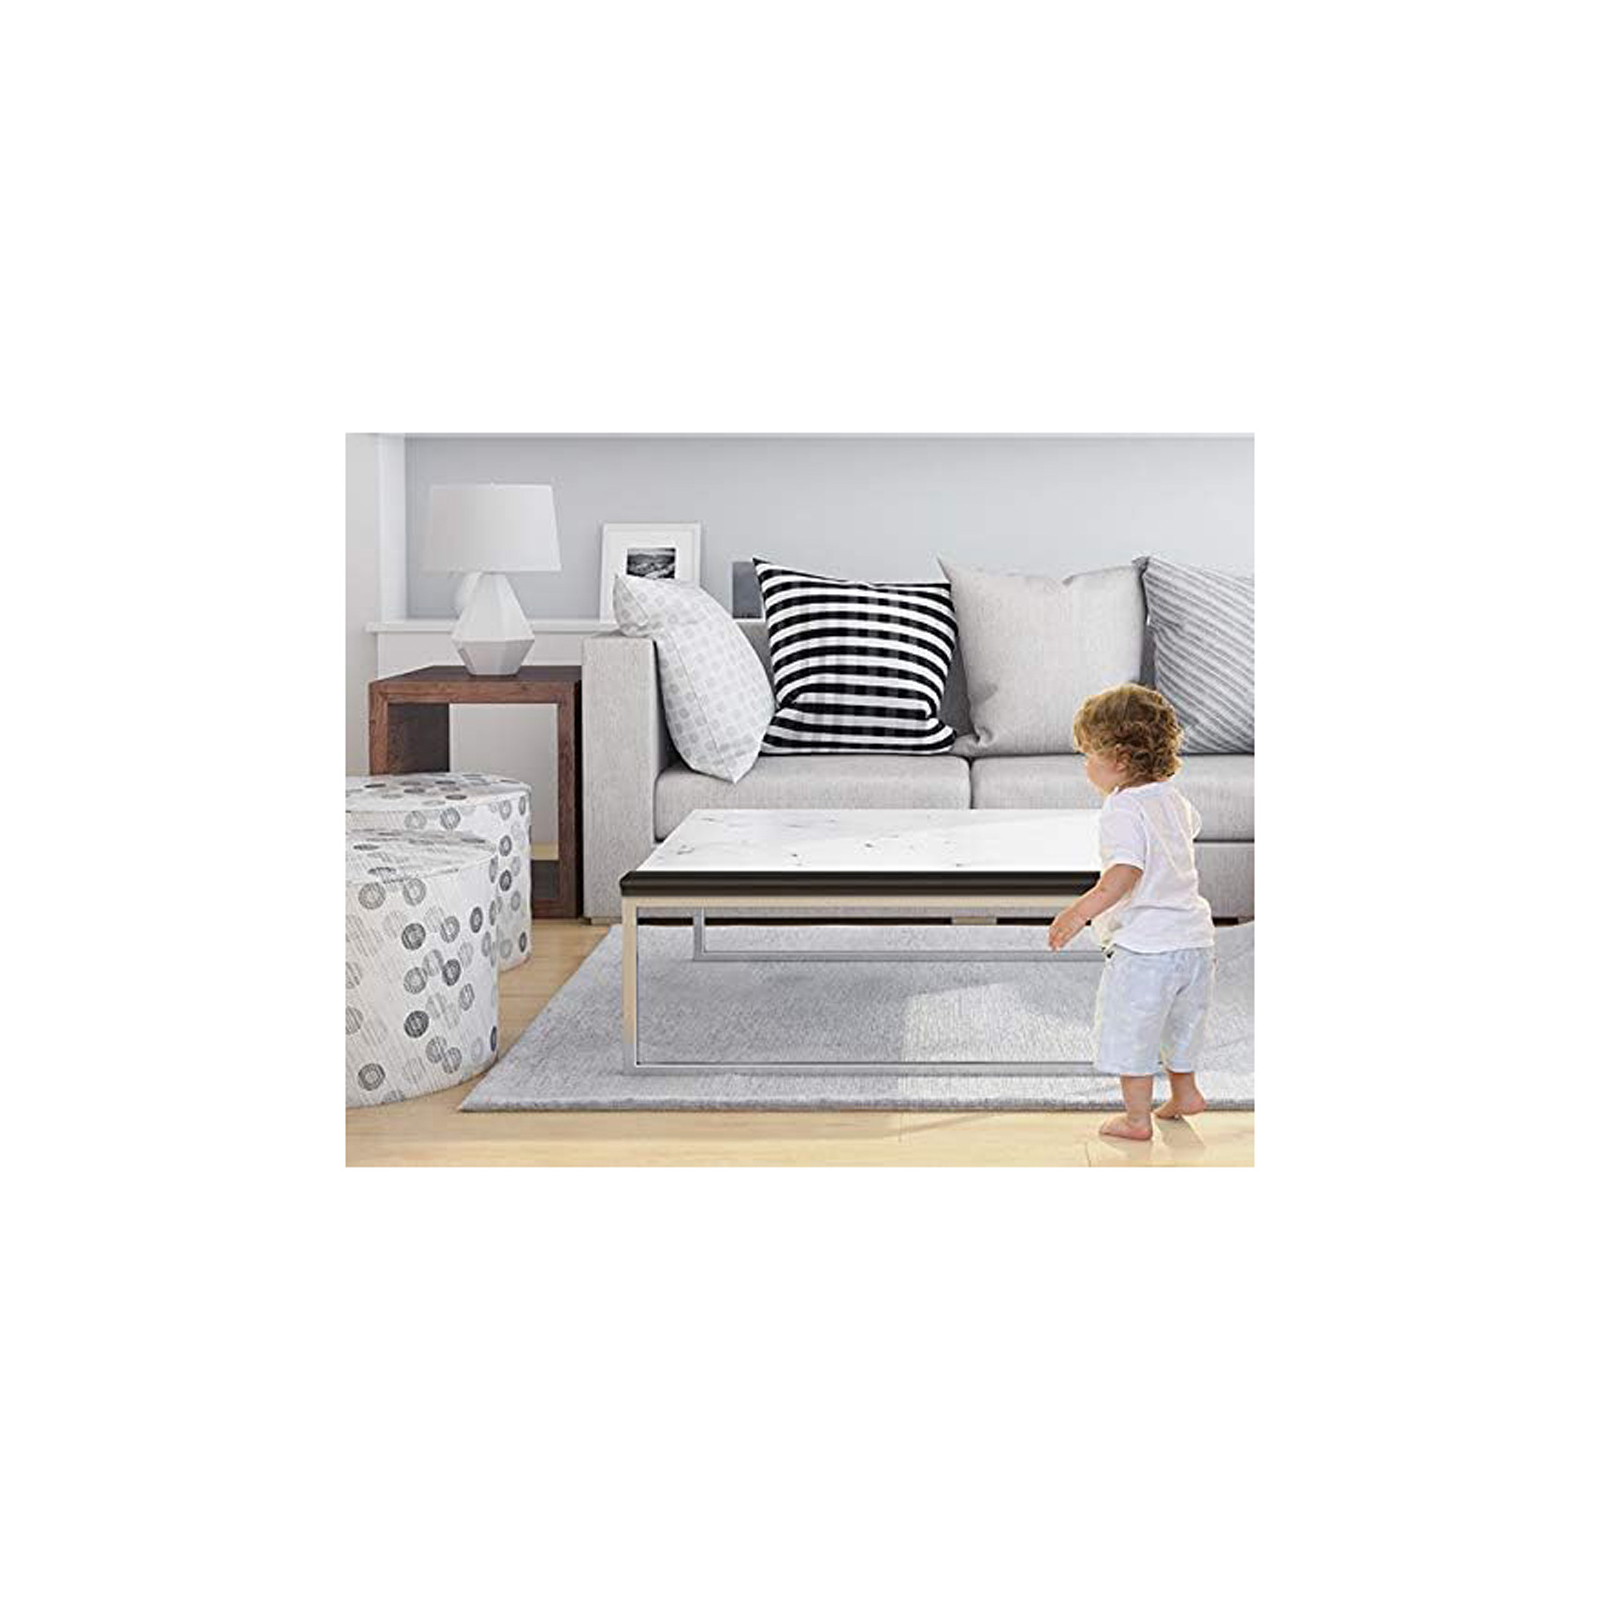 Защита на углы DreamBaby защитная лента на острые углы мебели 2 м, коричневая (G815) изображение 3